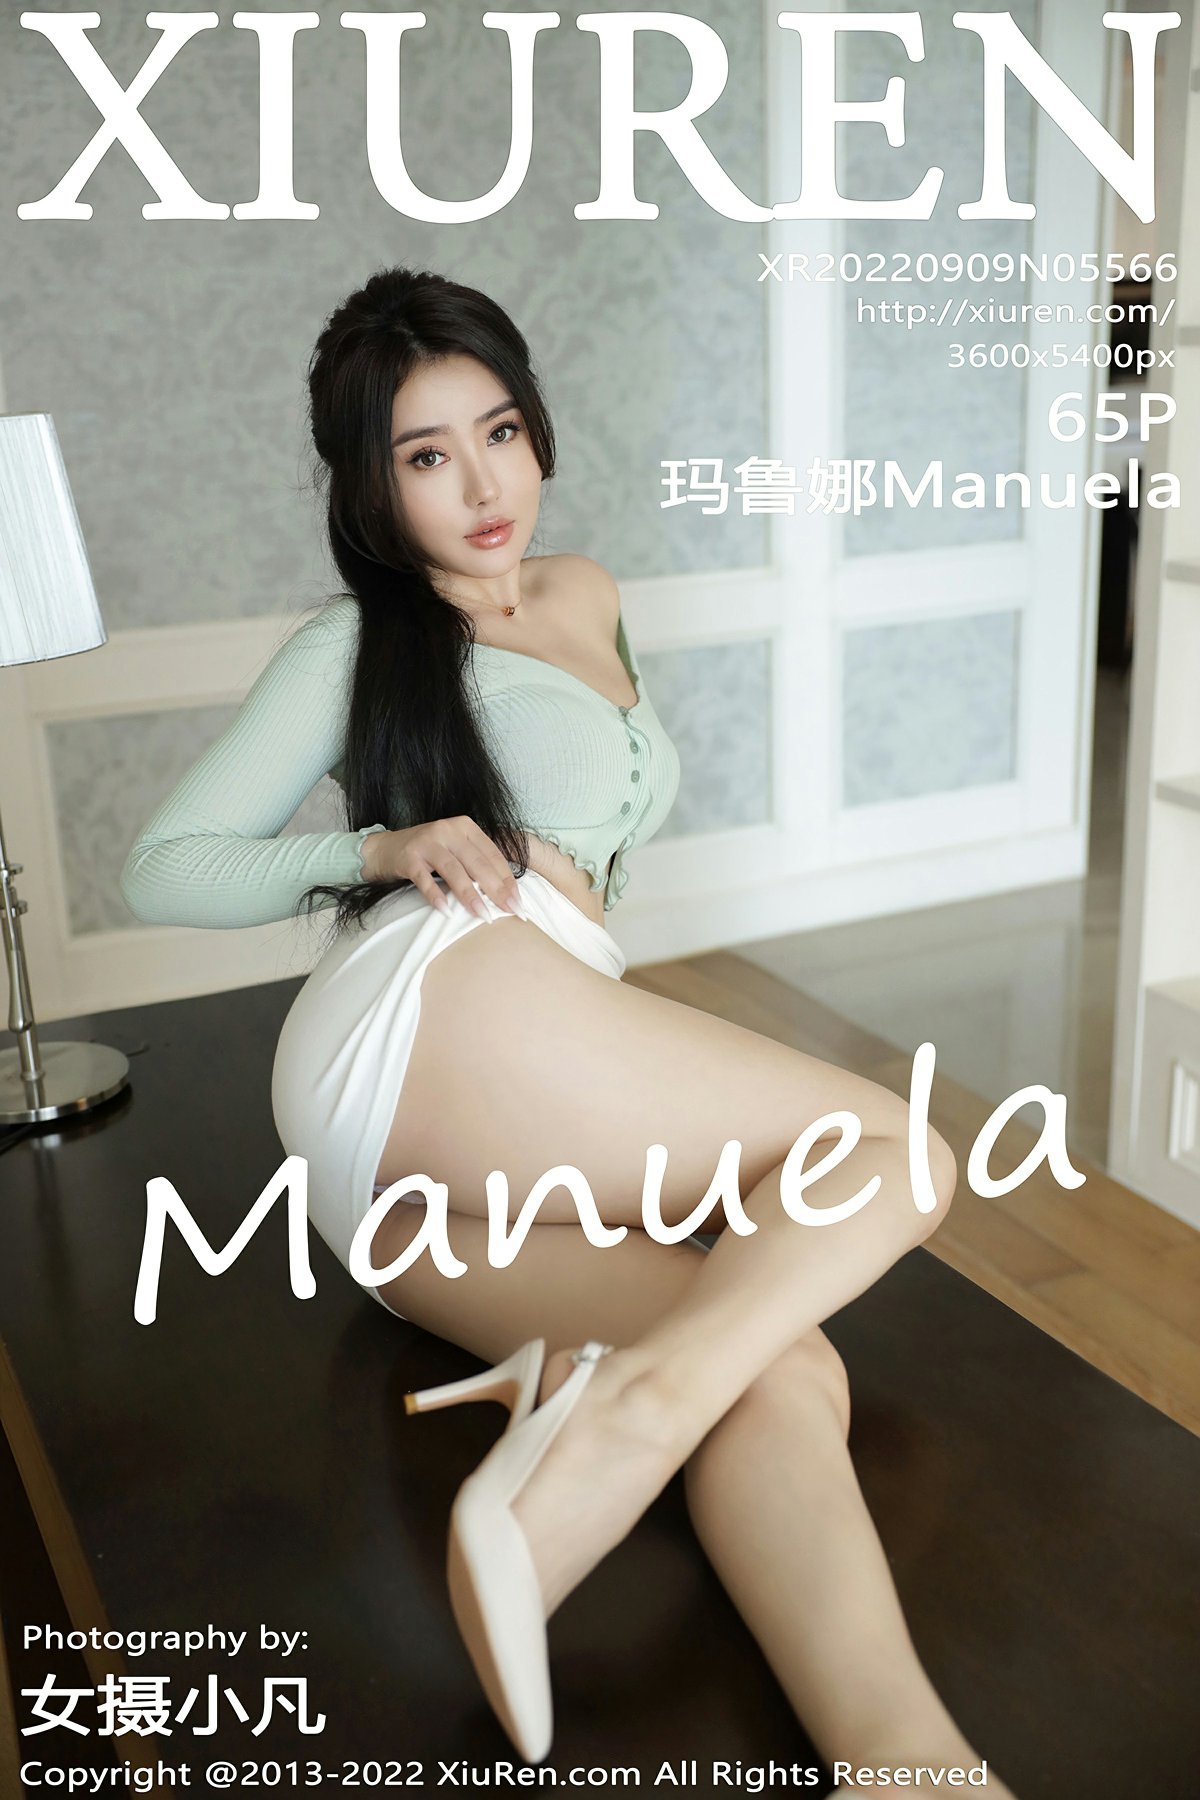 [XiuRen秀人网] 2022.09.09 No.5566 Manuela玛鲁娜 第1张